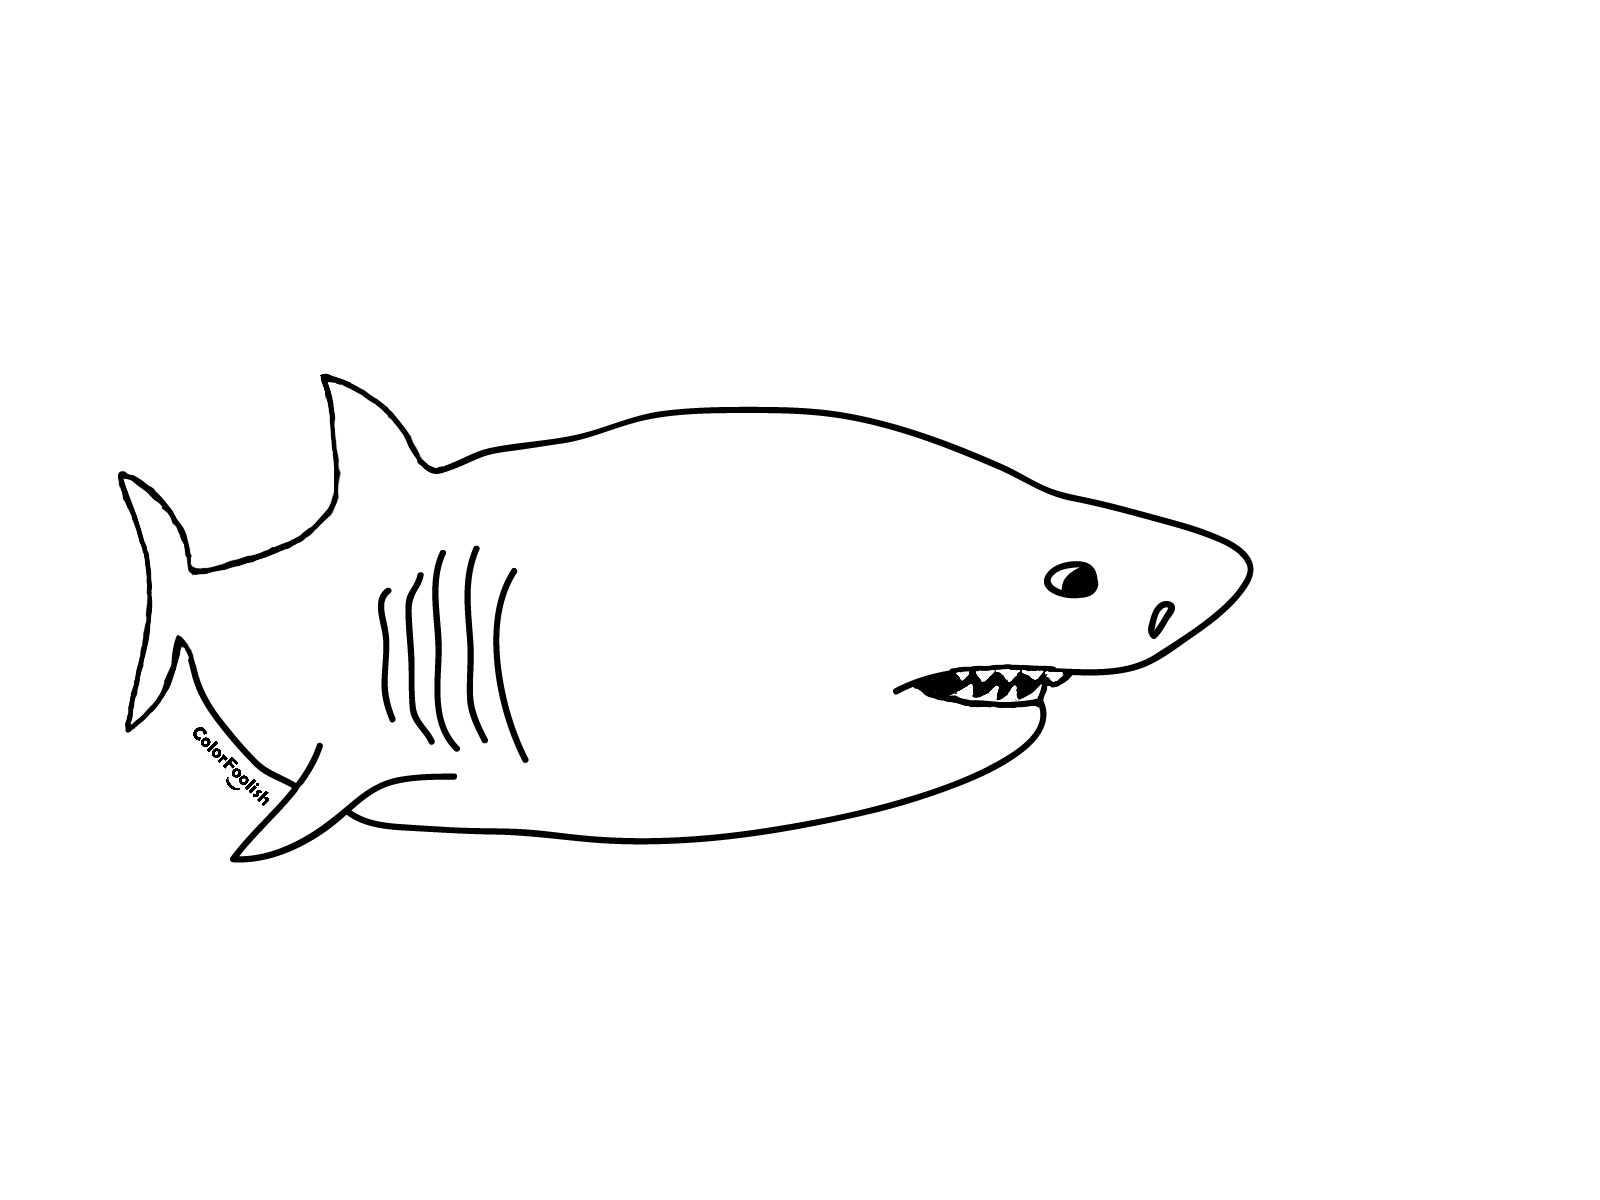 შესანიშნავი თეთრი ზვიგენის საღებრის გვერდი